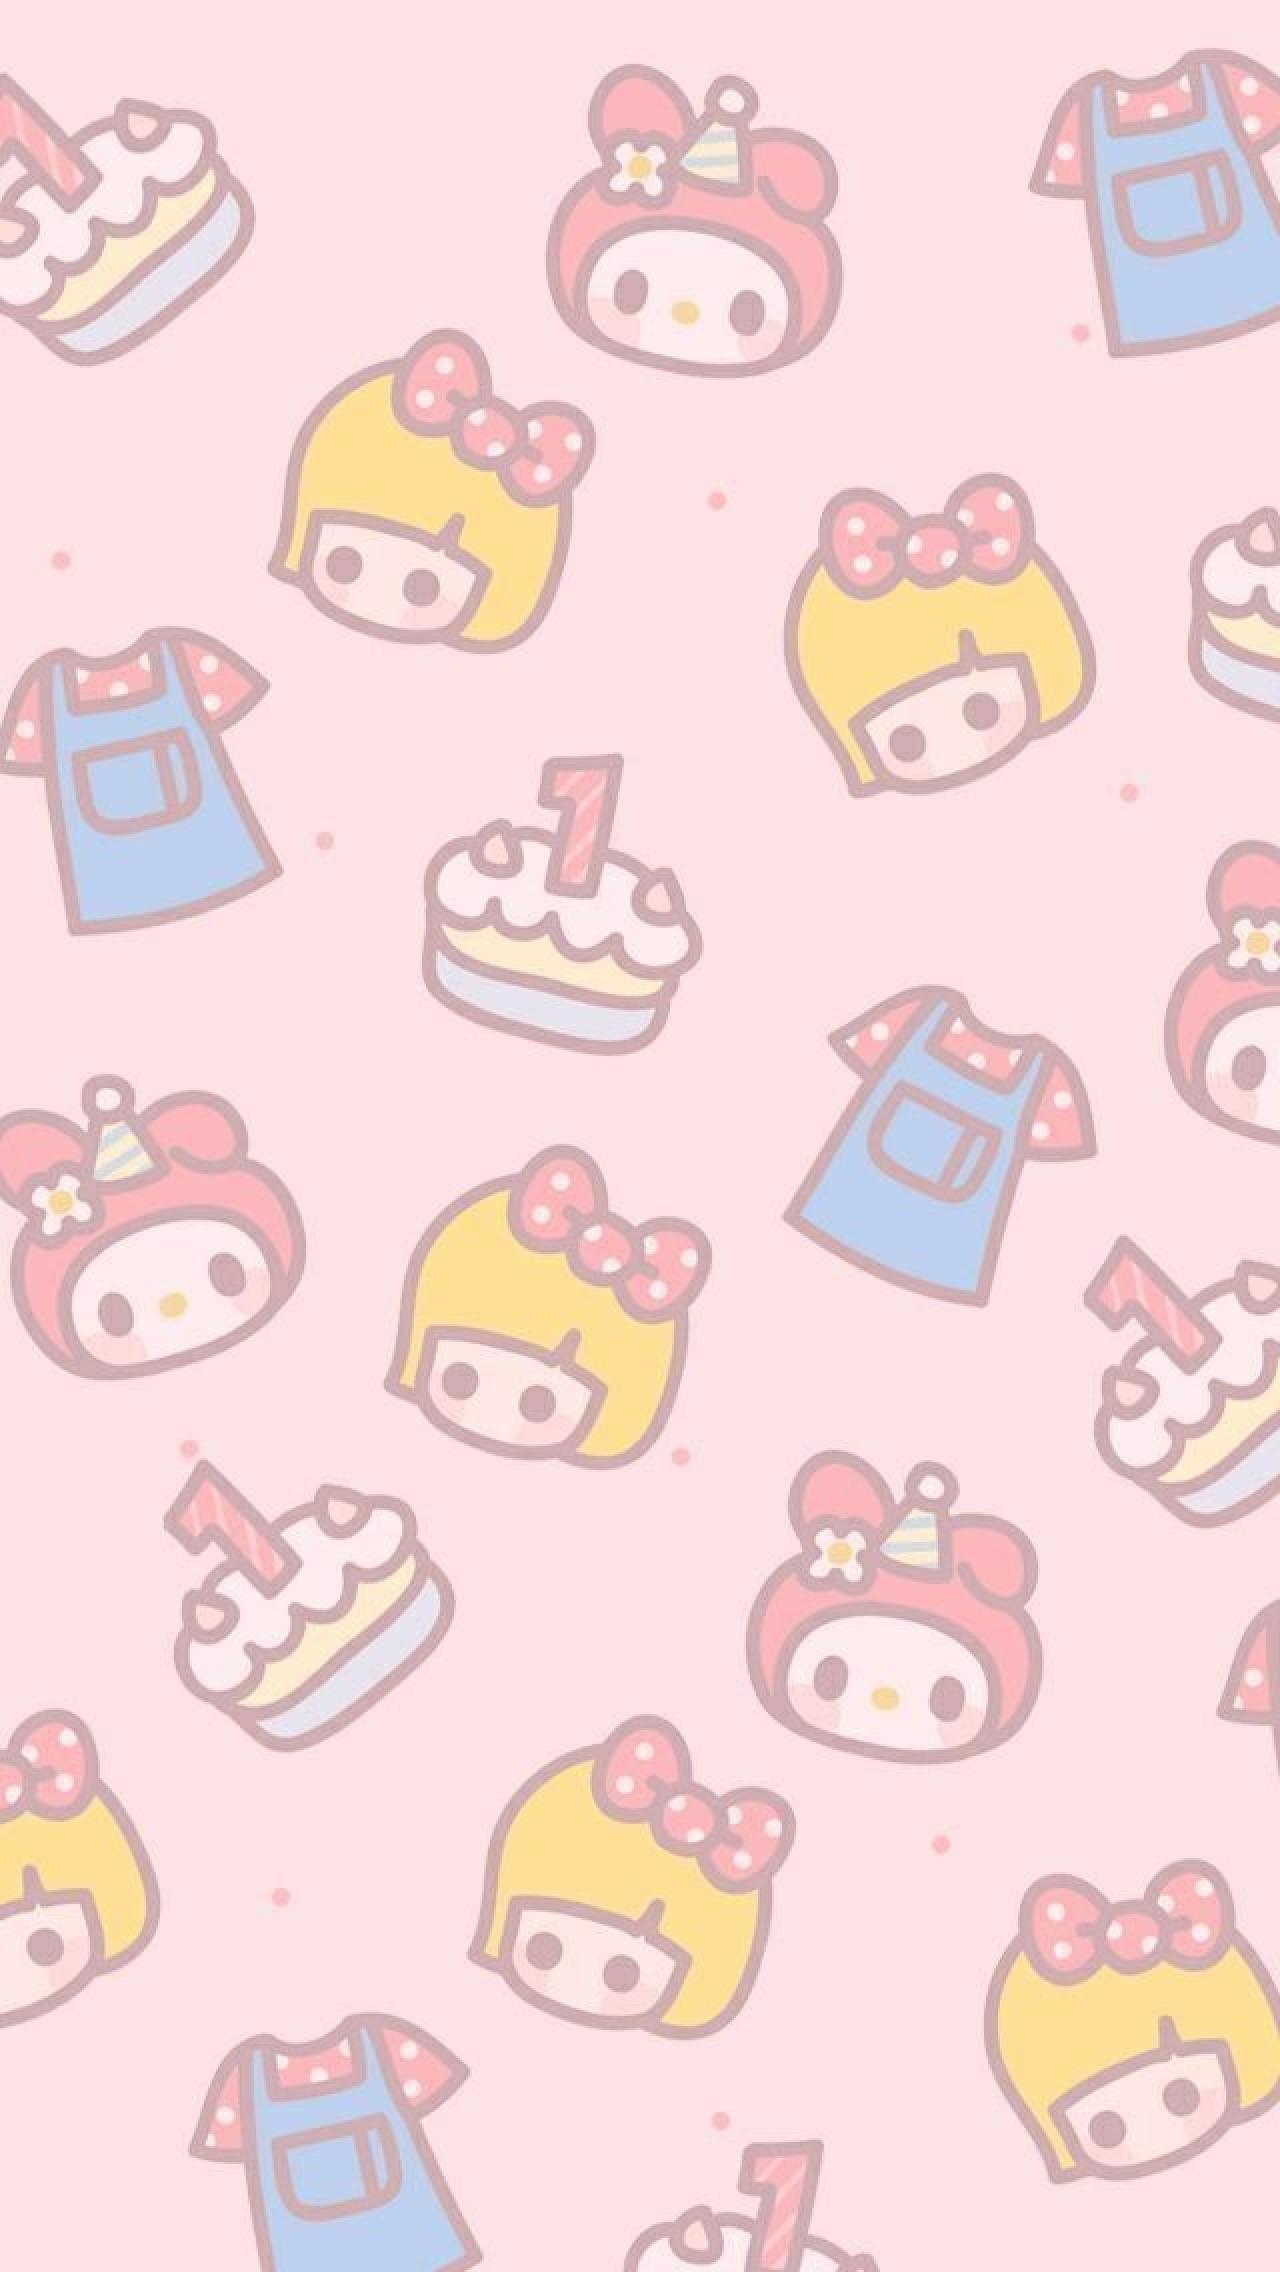 纯粉色背景，小女孩头像、天线宝宝、T恤、小蛋糕图案手机壁纸